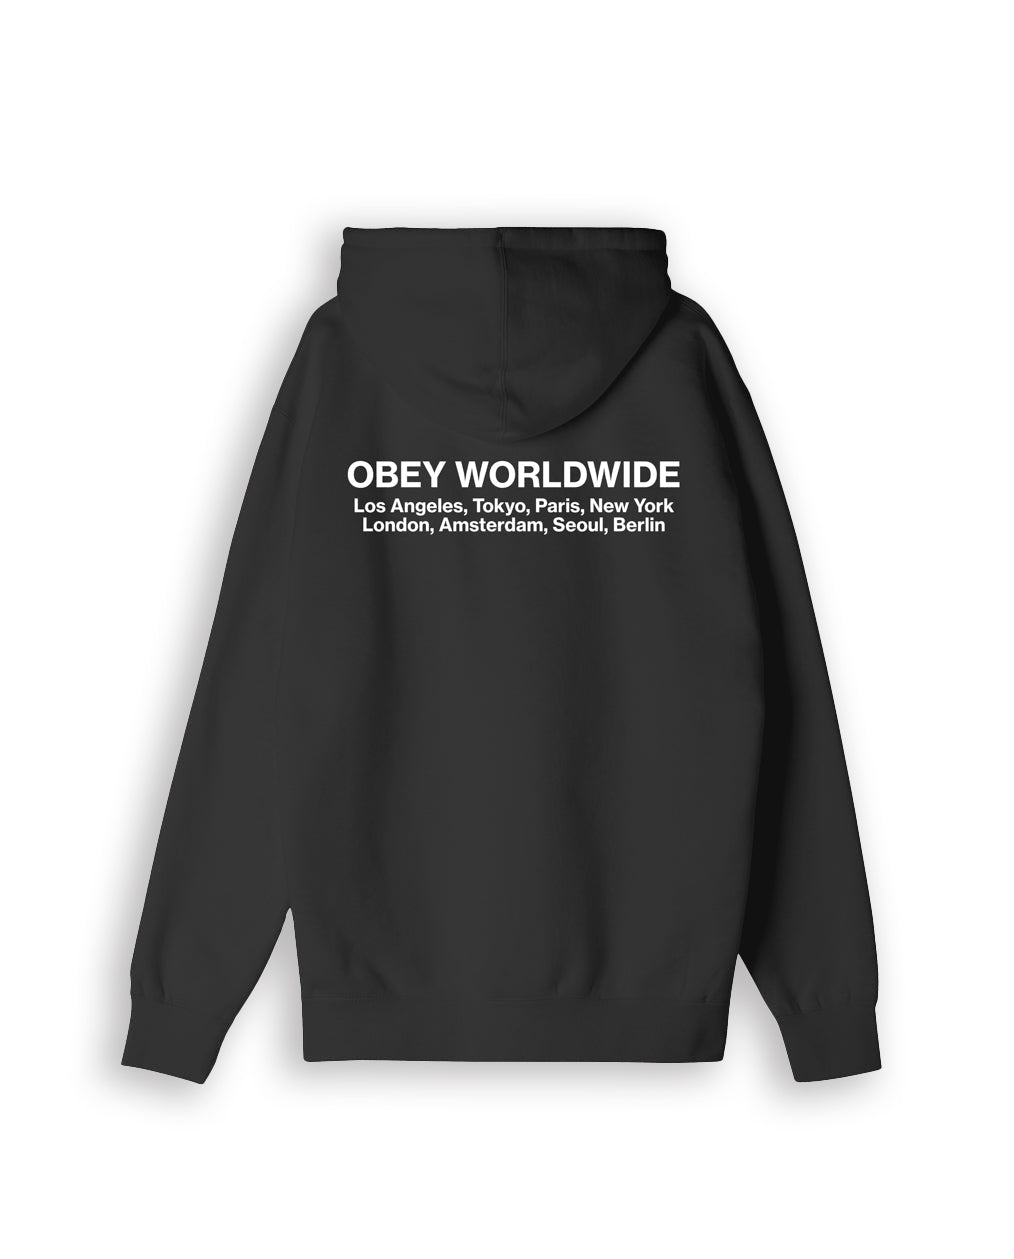 Obey Worldwide Cities Premium Hoodie